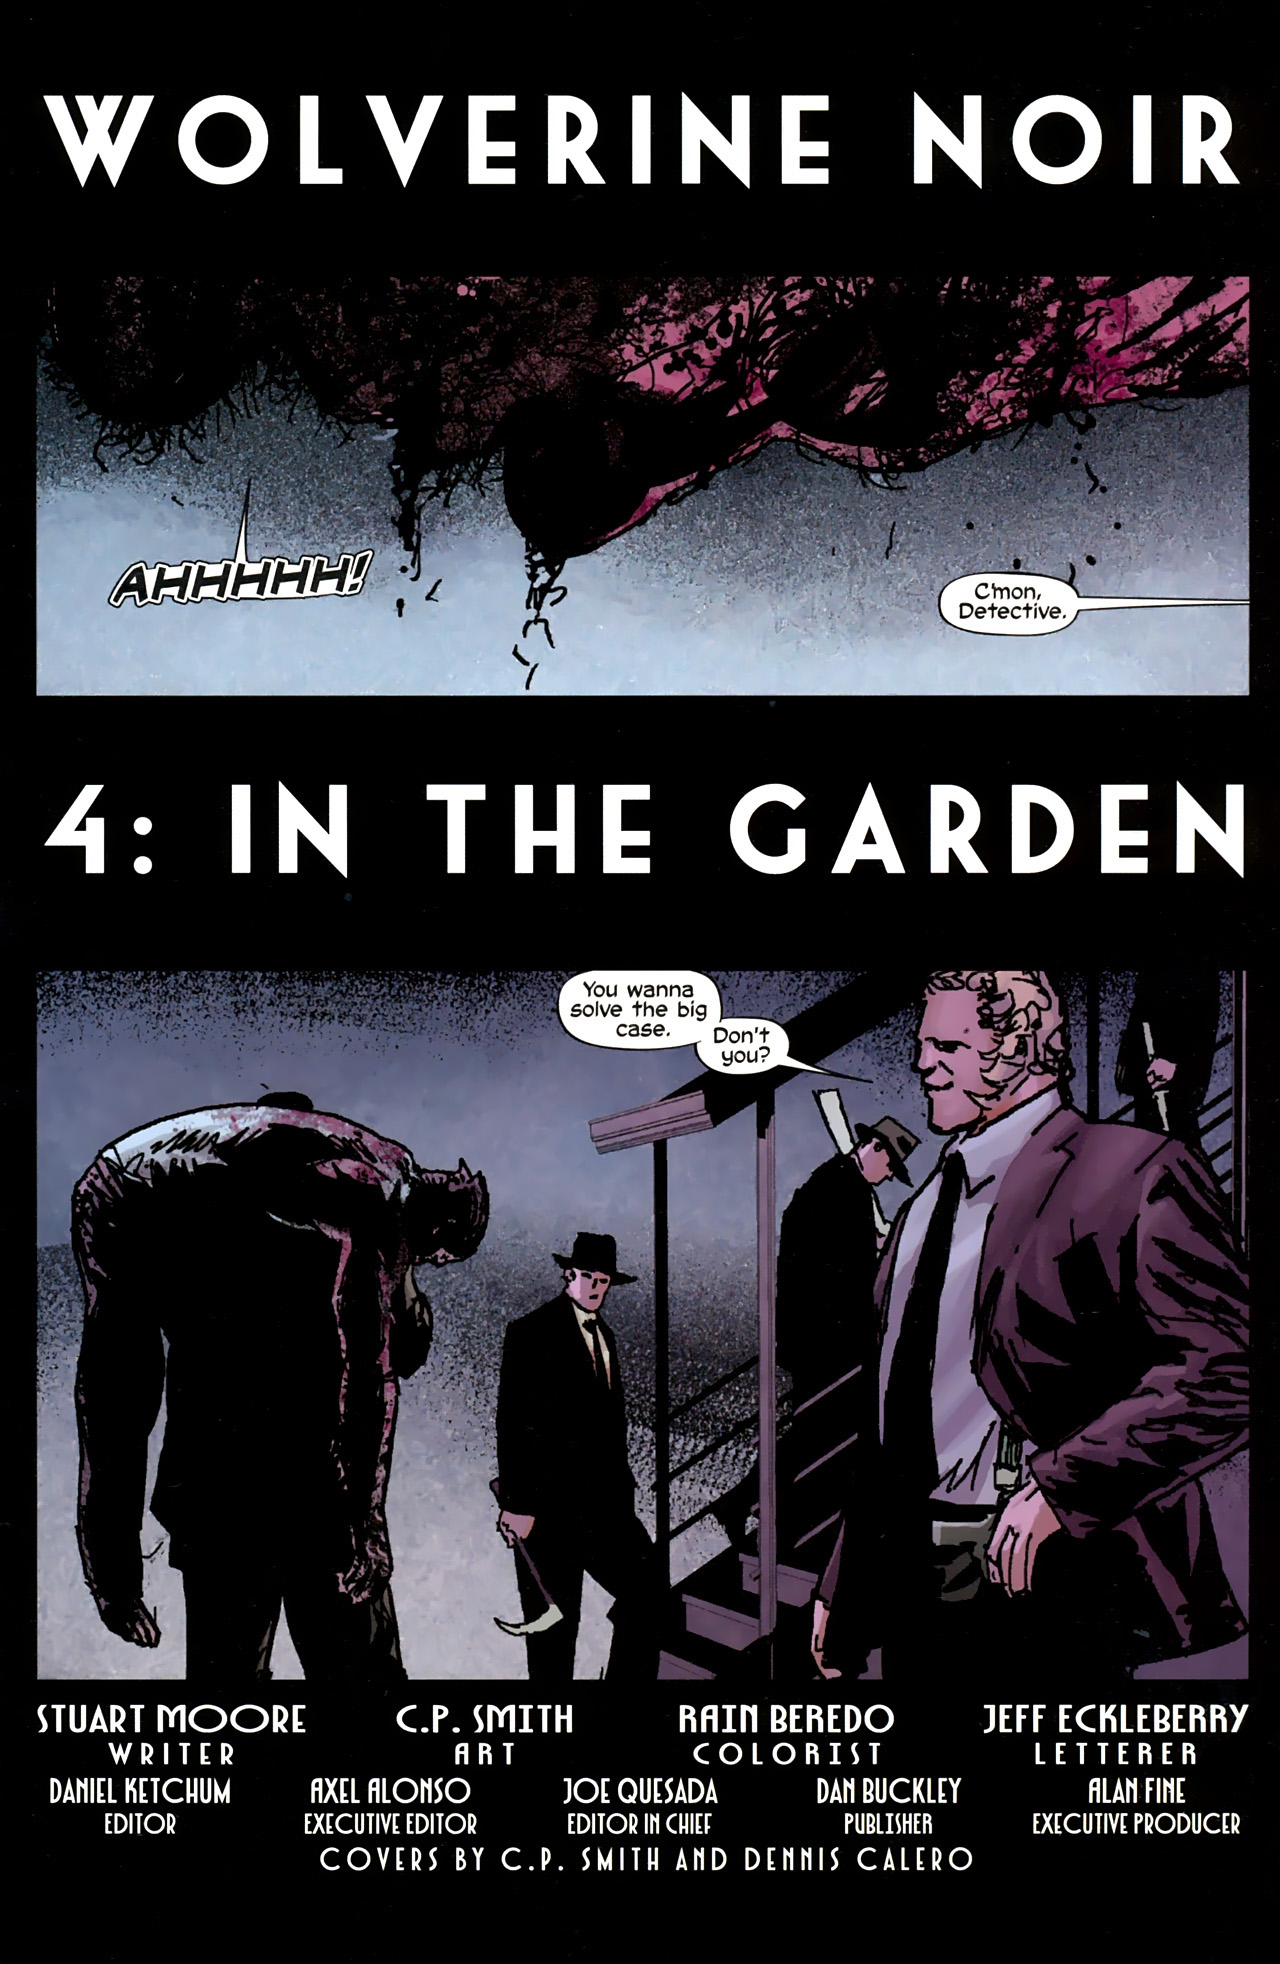 Wolverine Noir #4 (of 4) - In The Garden